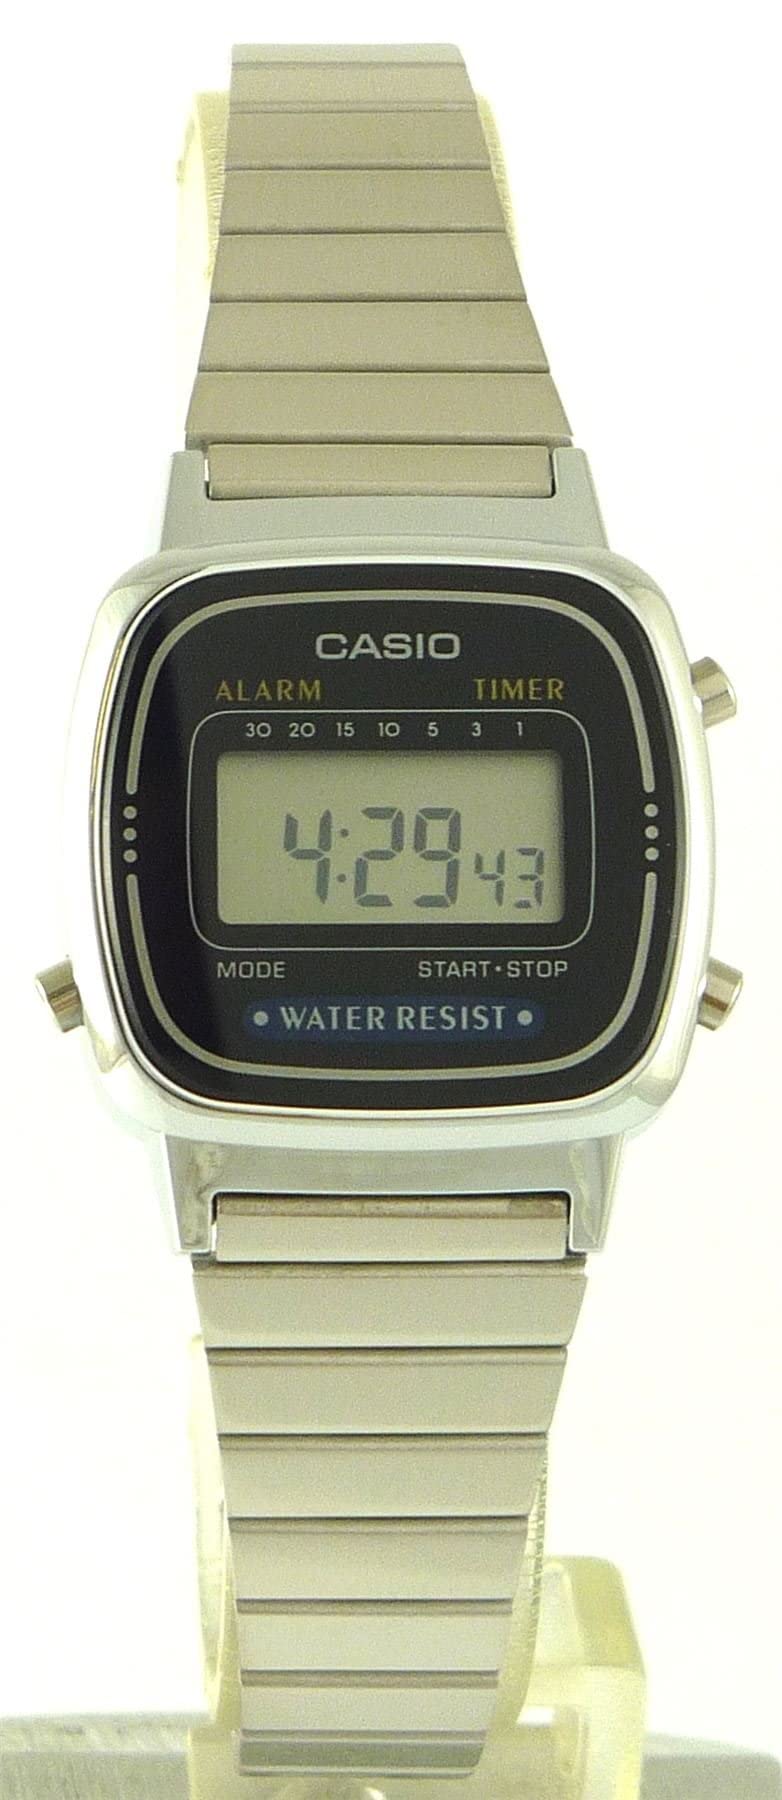 Casio Women's LA670WA-1 Daily Alarm Digital Watch